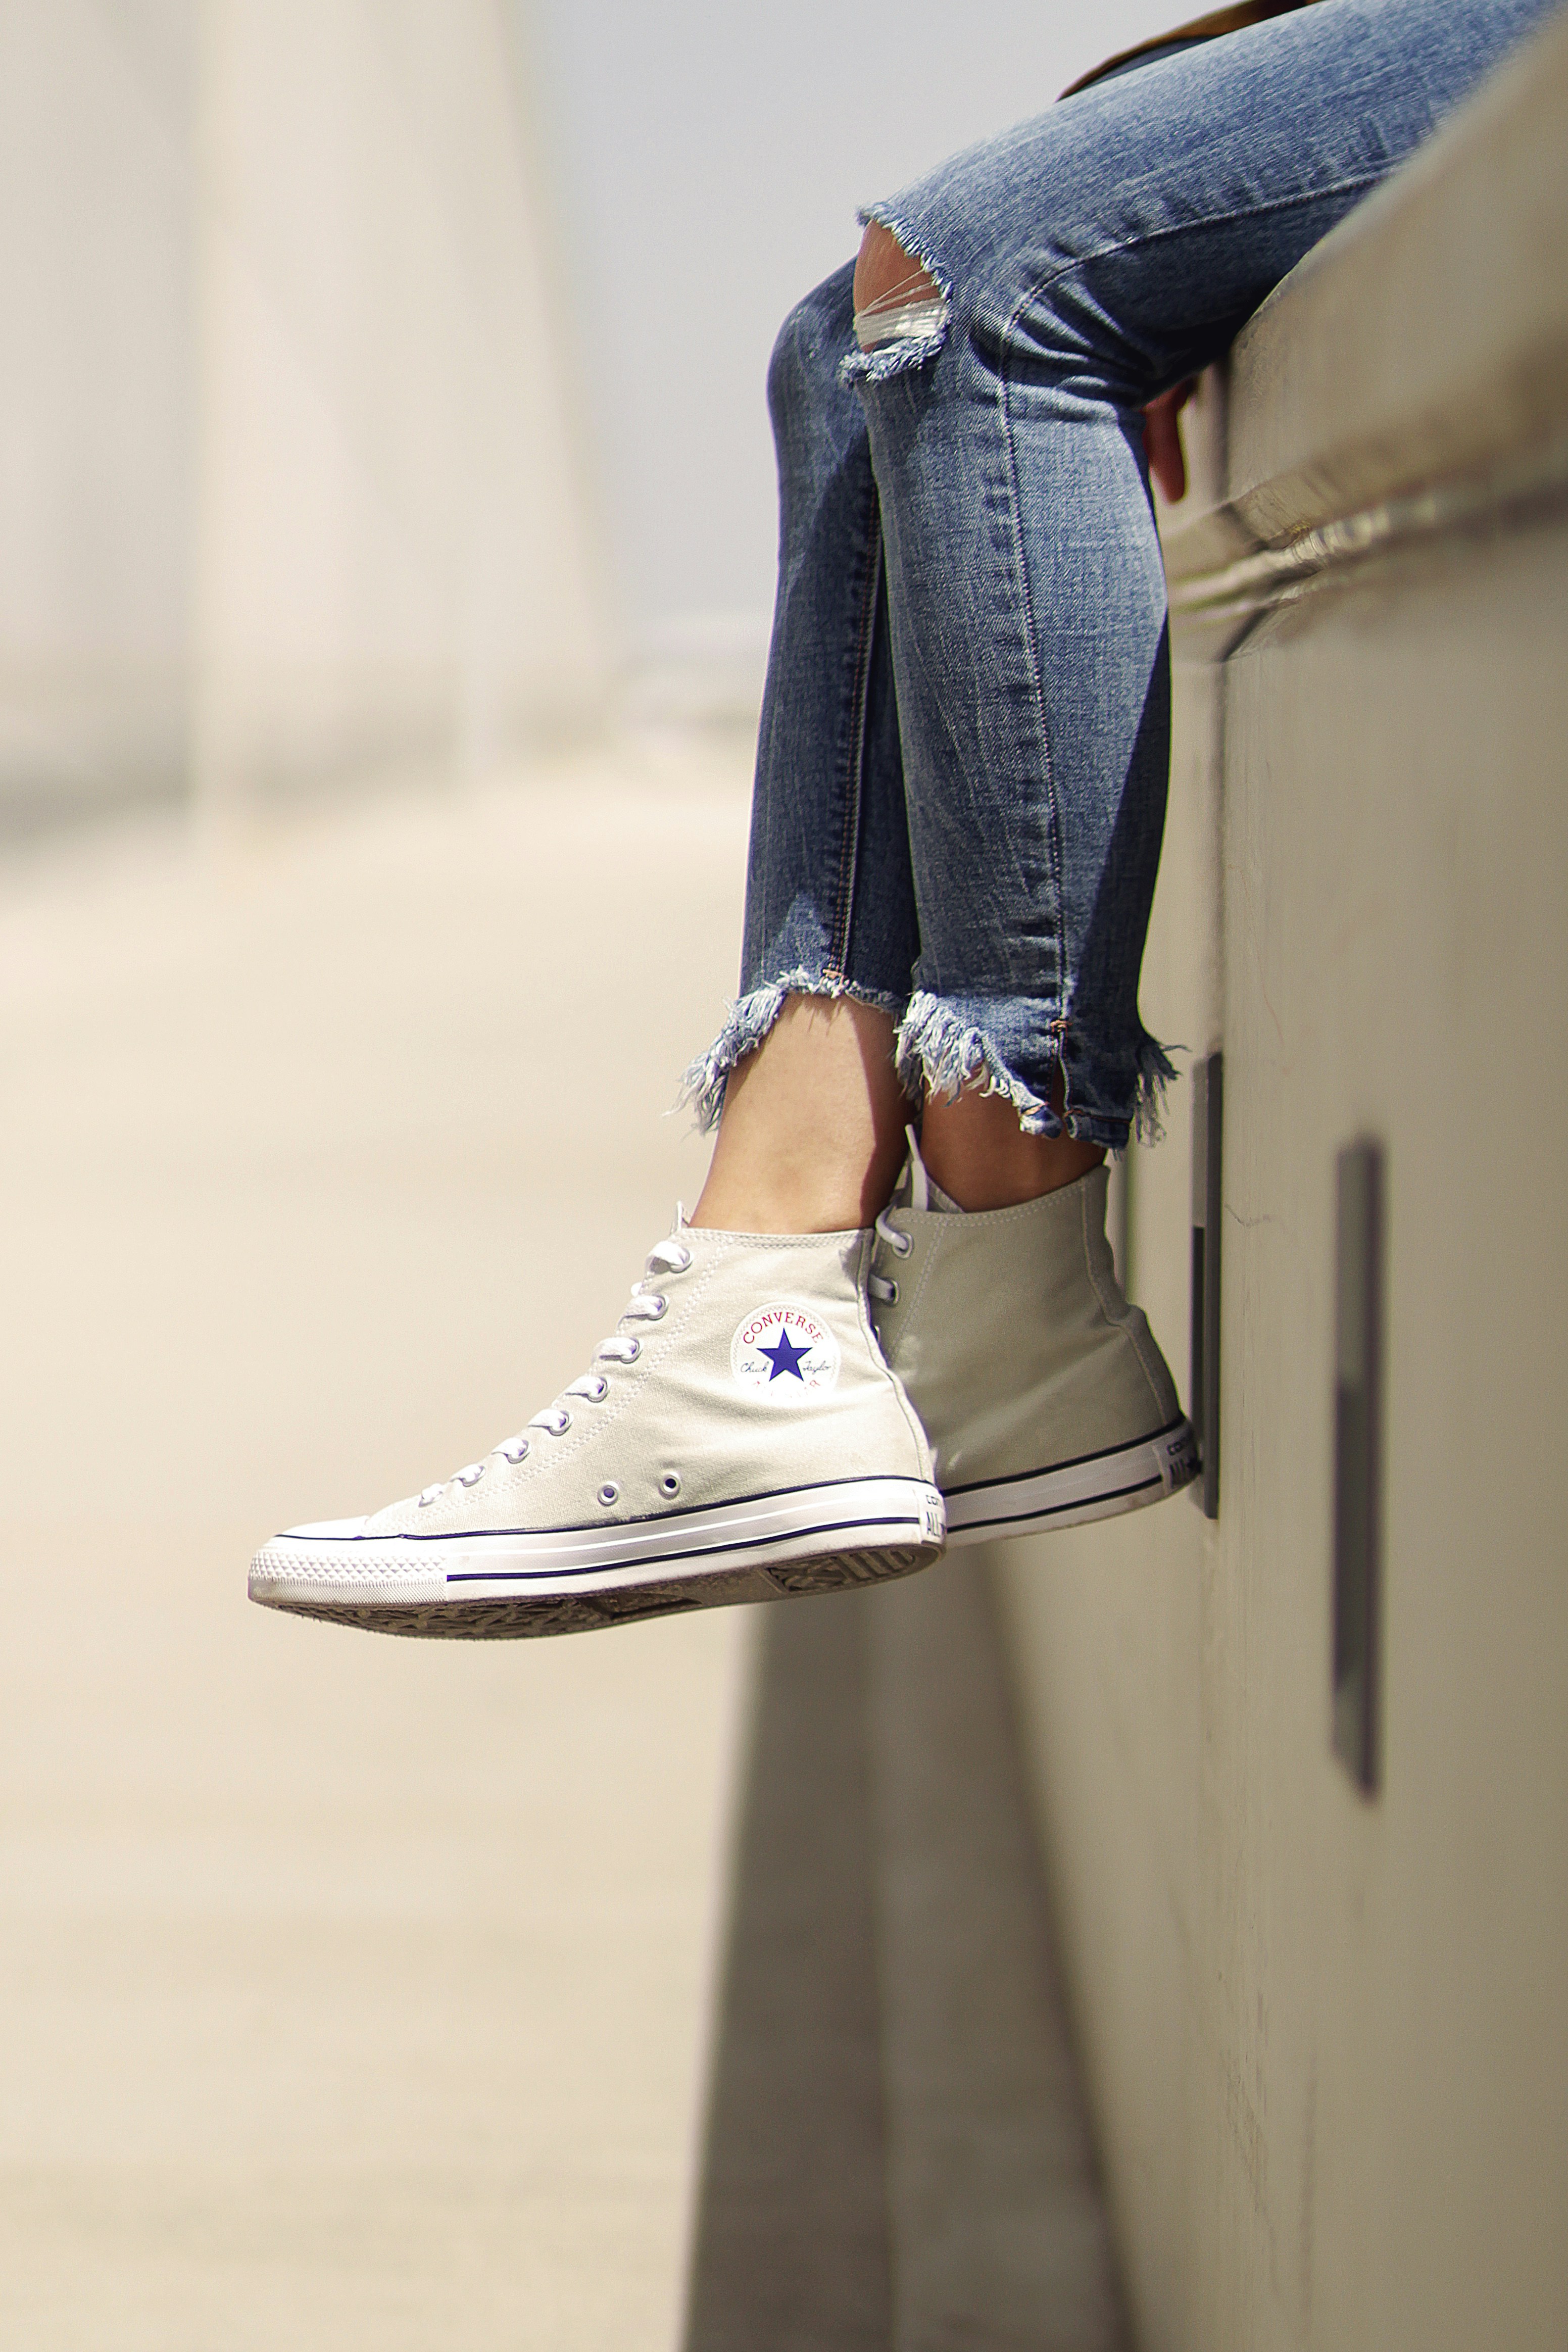 girl wearing white converse